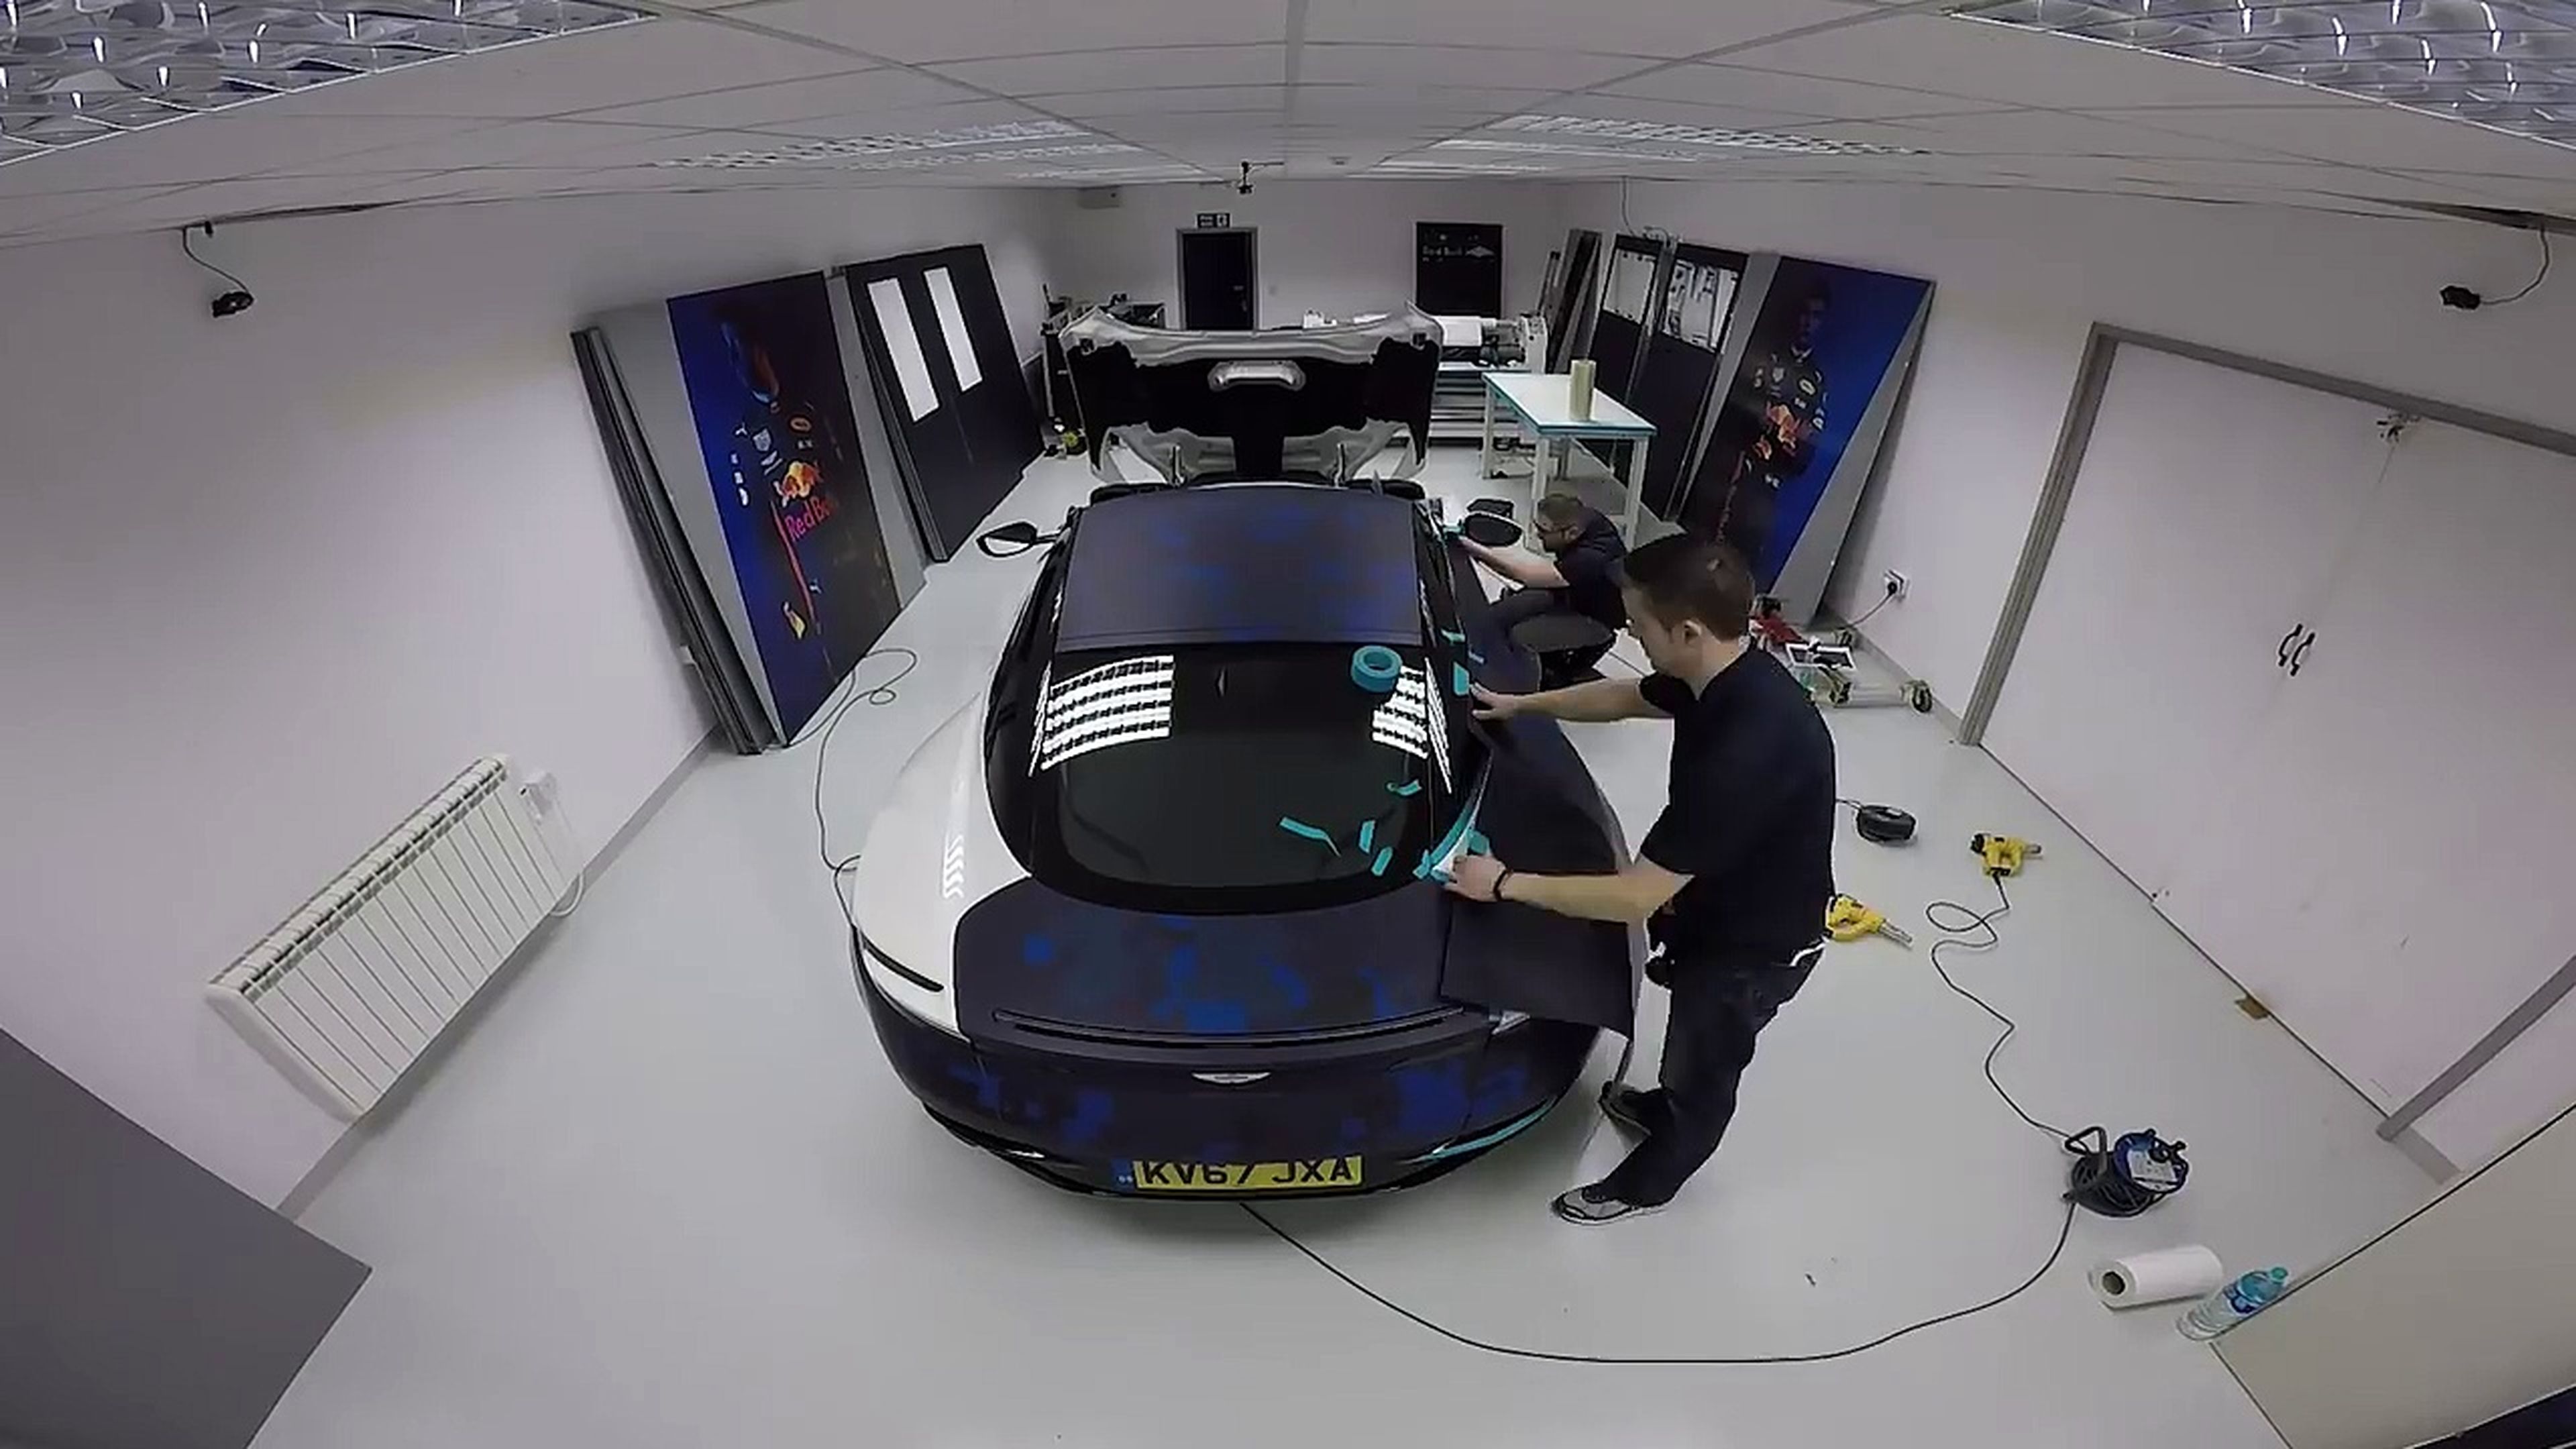 VÍDEO: el Aston Martin DB11, con los colores del F1 de Red Bull Racing, ¡gusta!